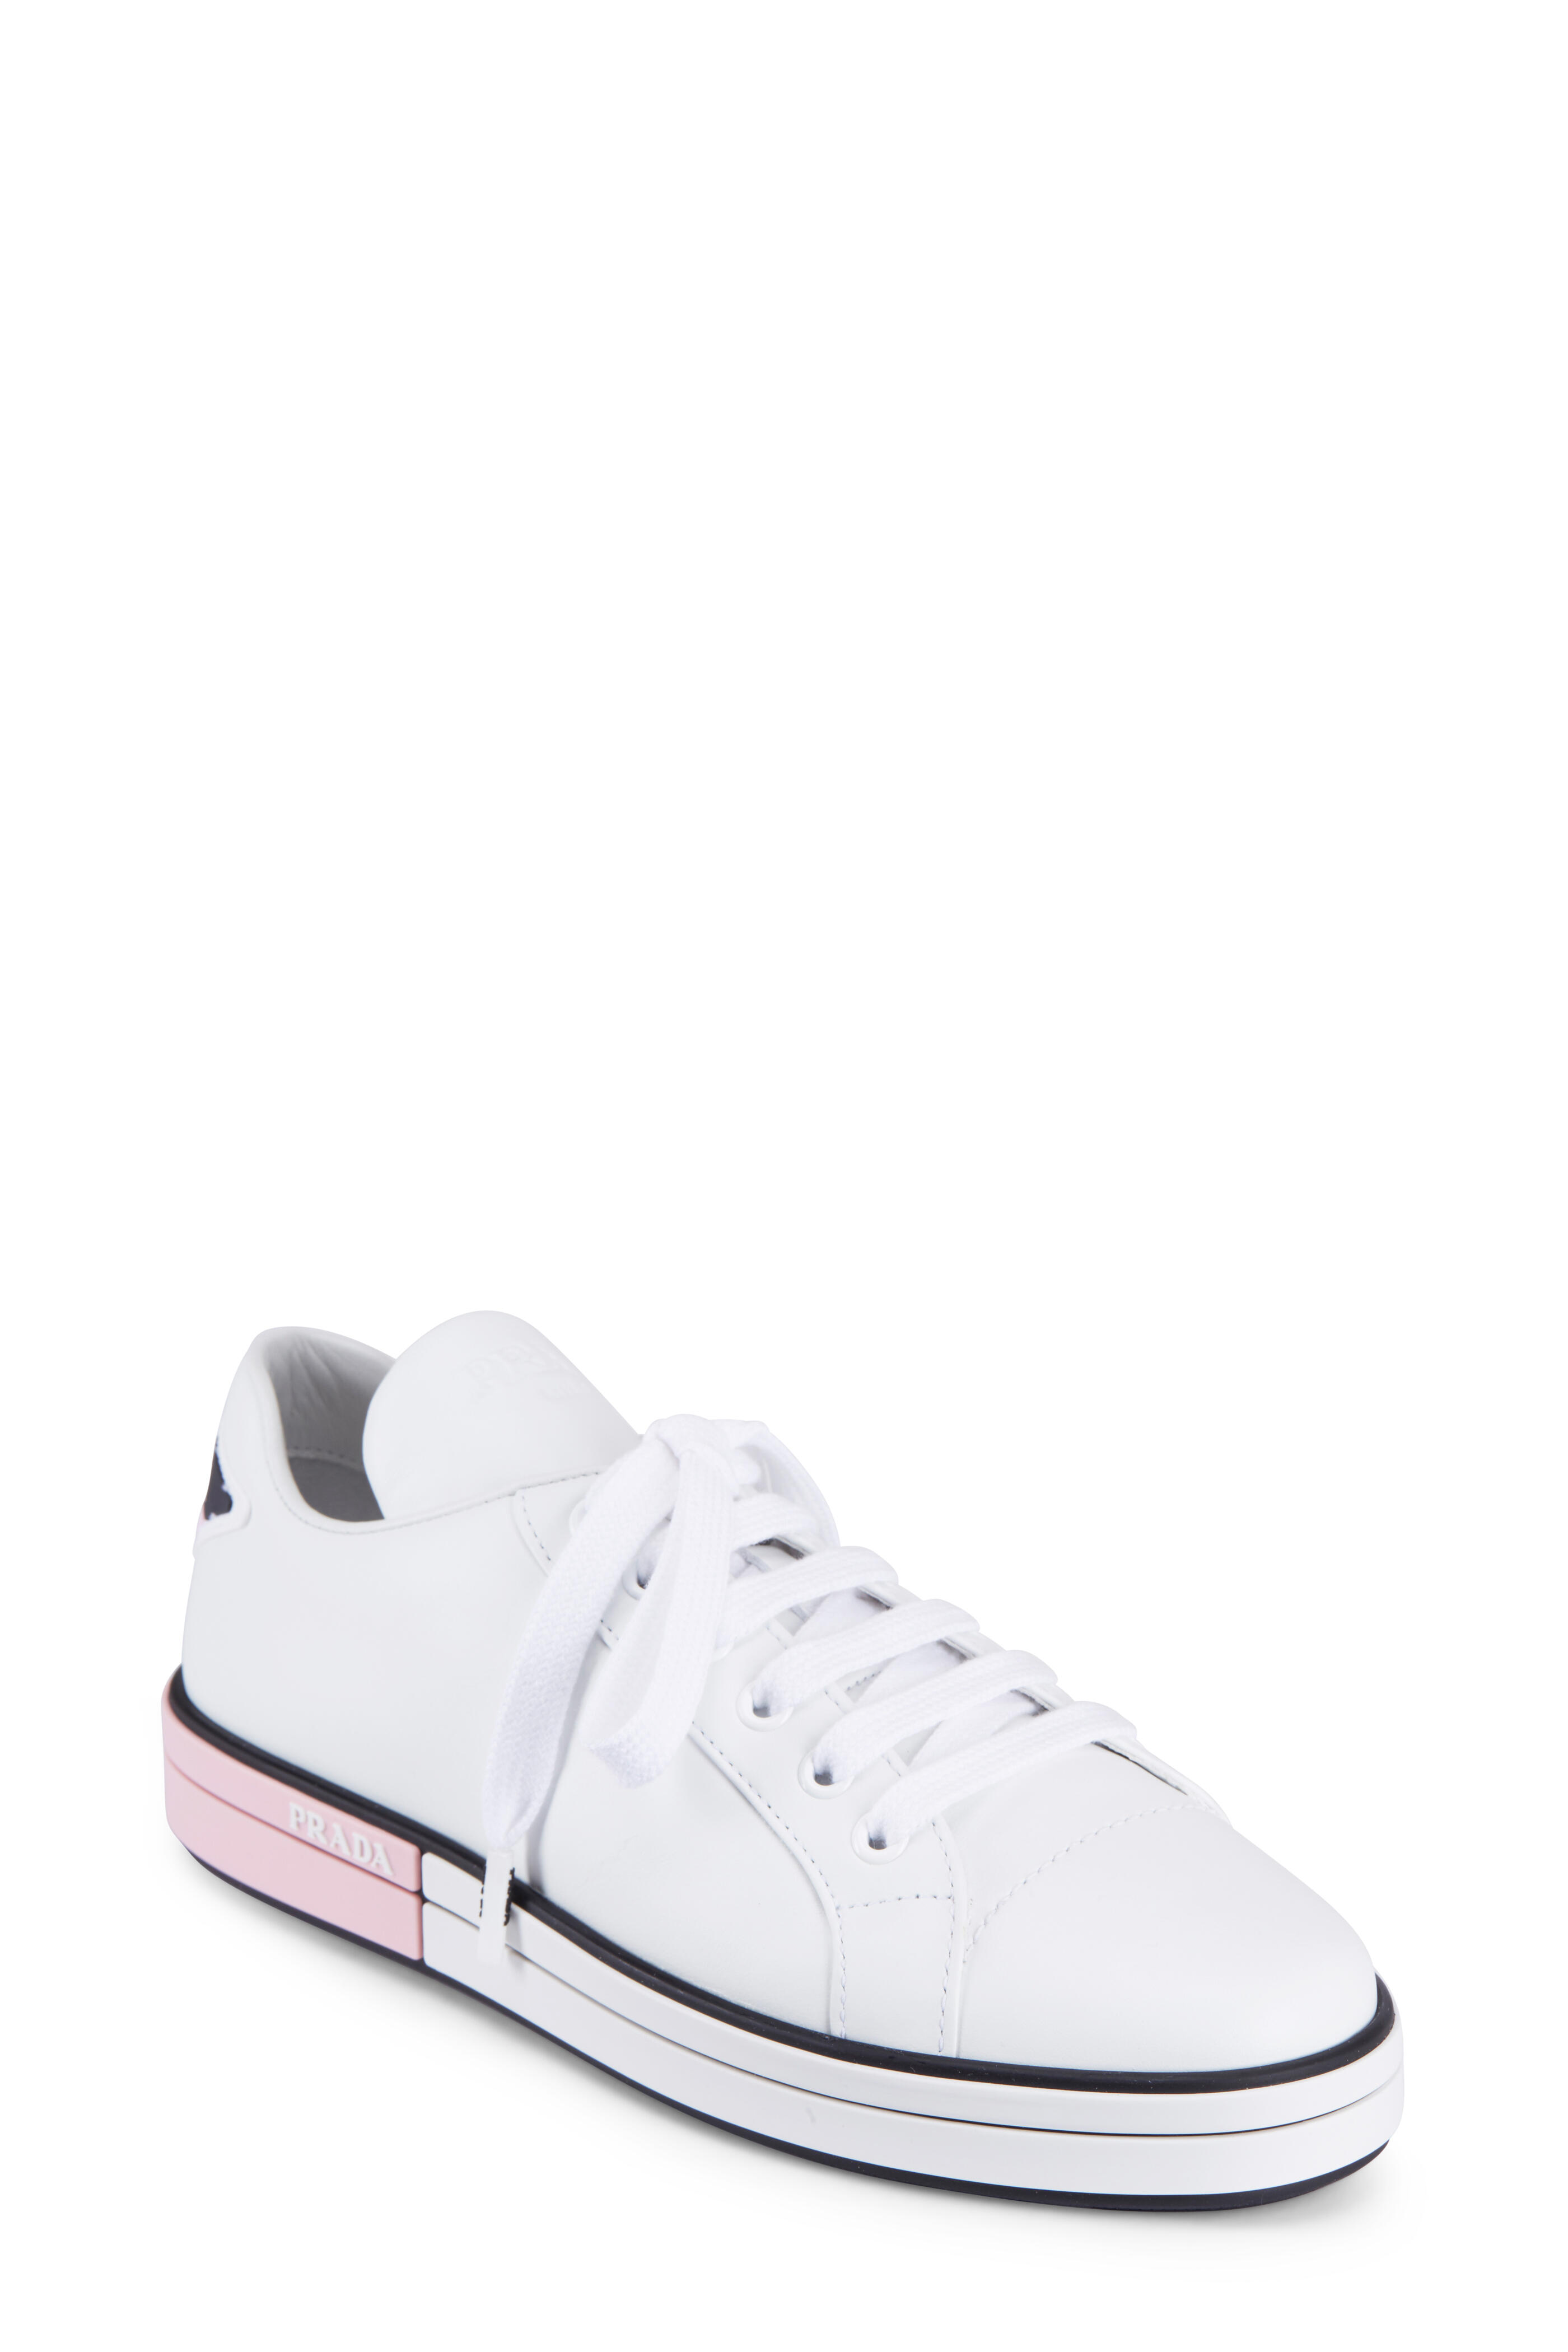 Prada - White Leather Sneaker Mitchell